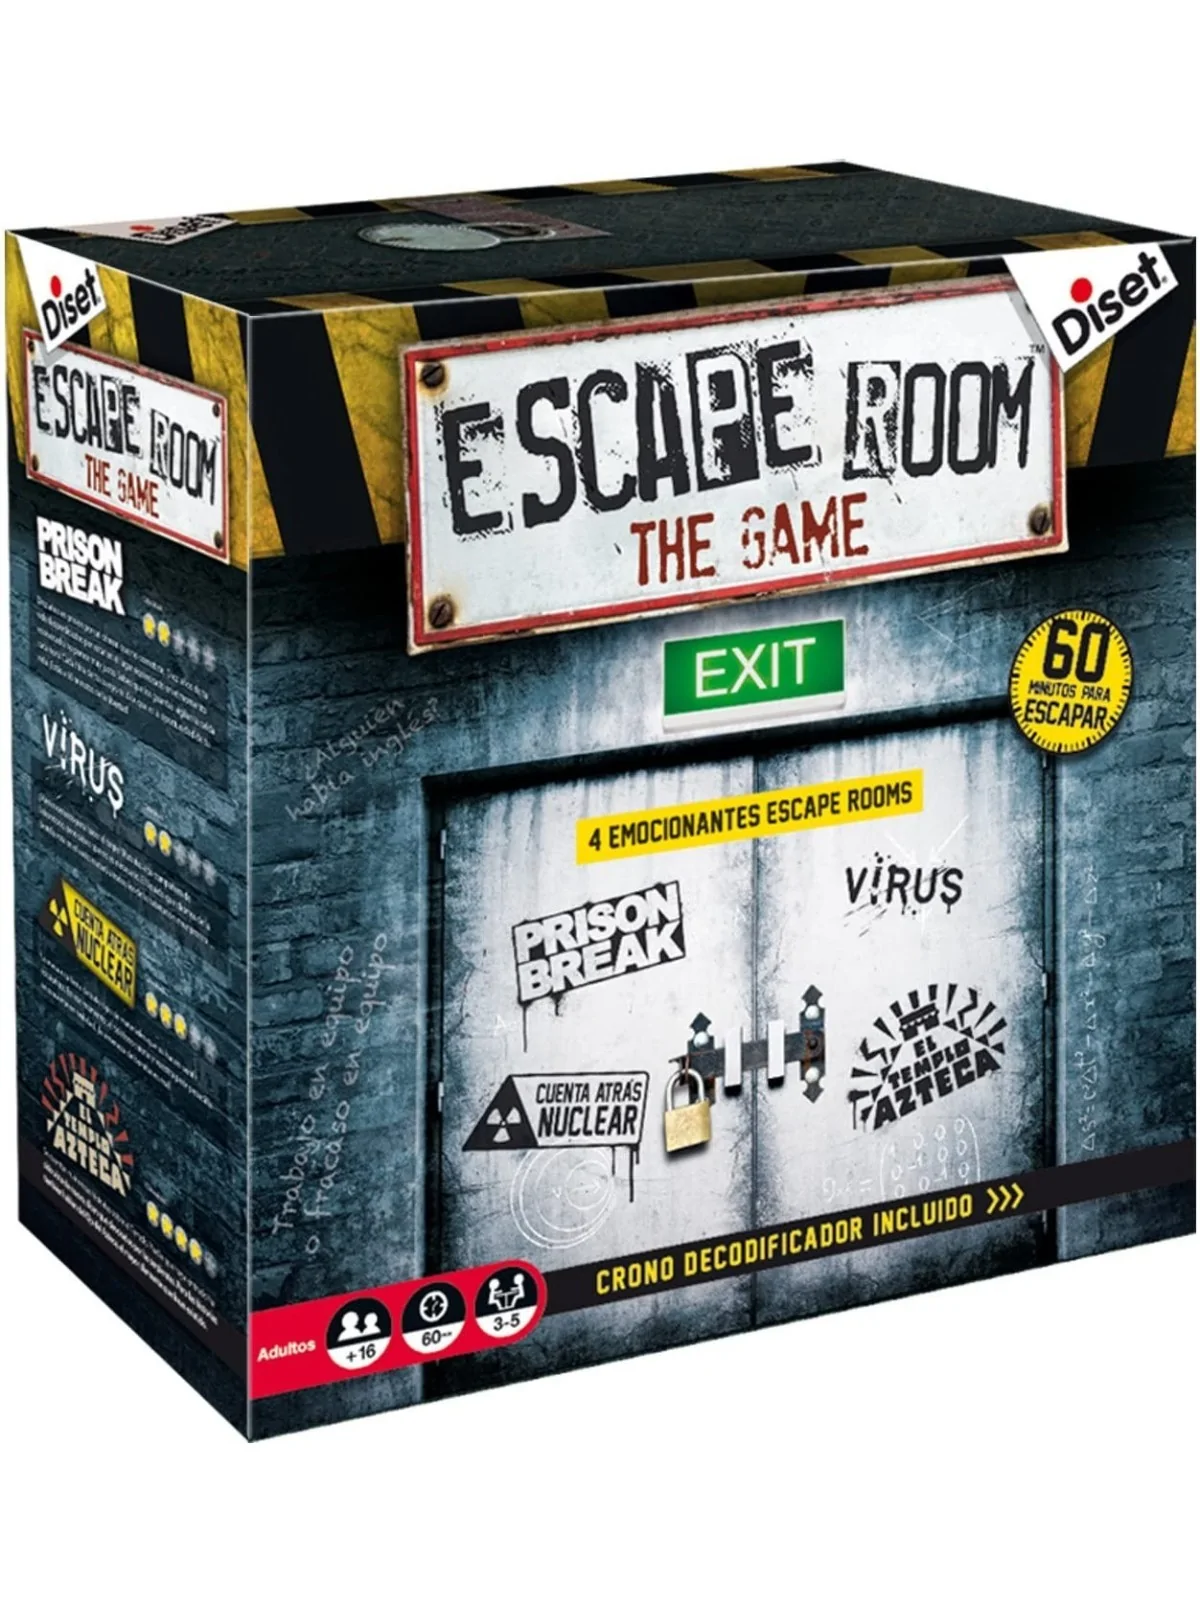 Comprar Escape Room: The Game barato al mejor precio 36,00 € de 